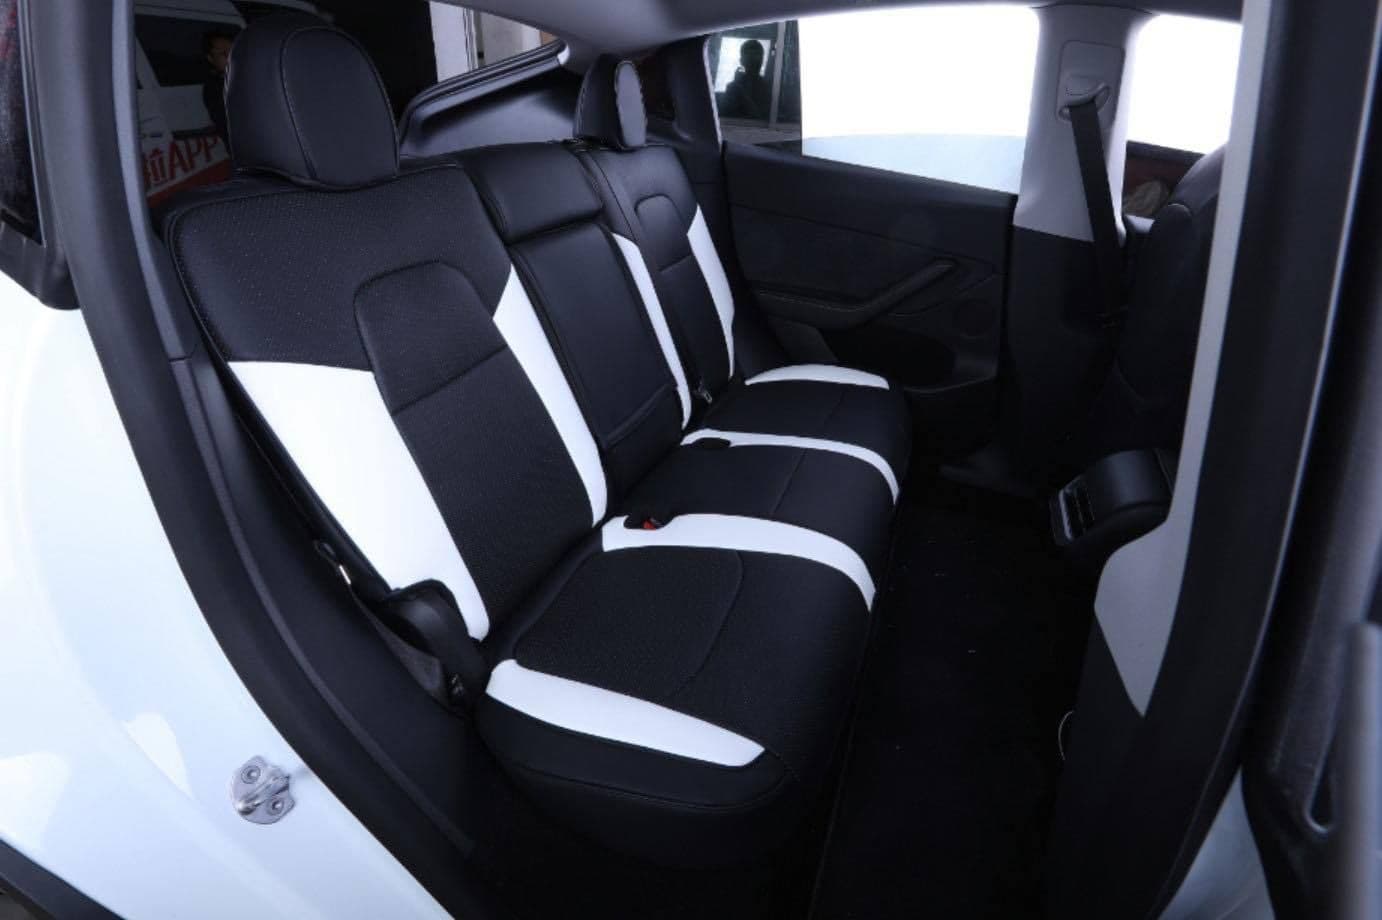 Car-Seat-Cover-Set-for-Tesla-Model-Y.jpg